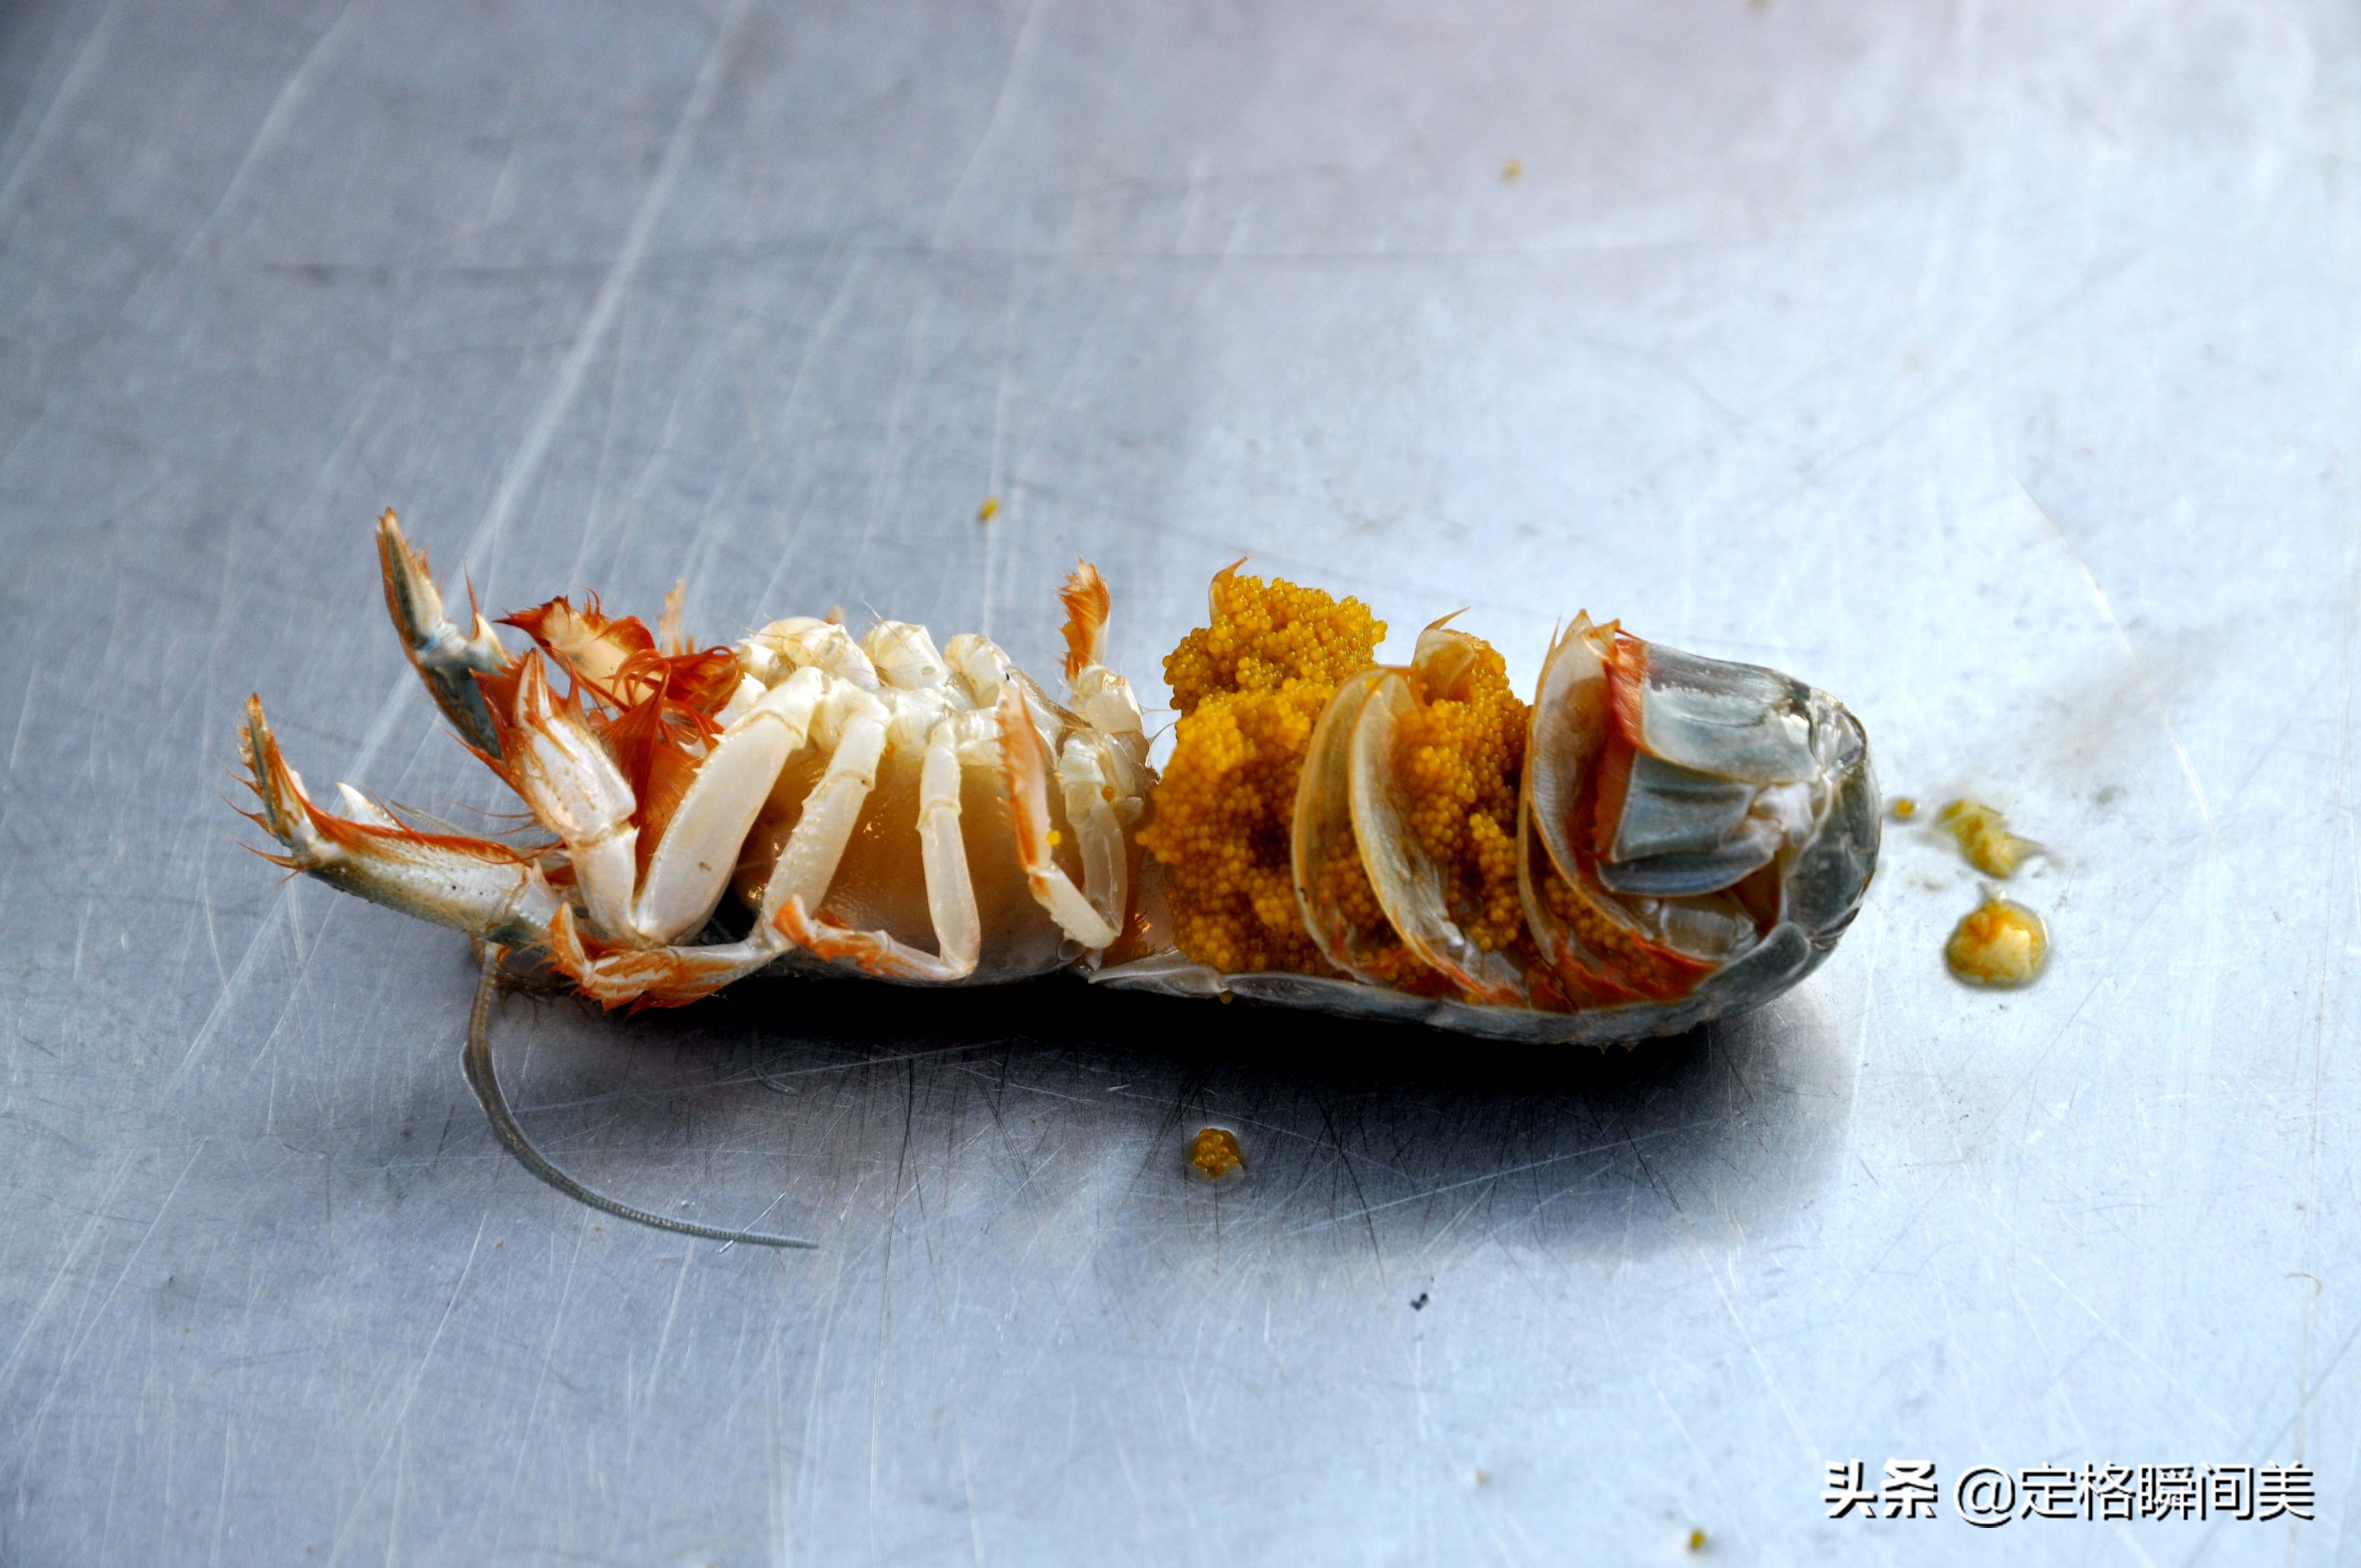 青岛早市新鲜土特产海蜂子50元2斤 小伙经营有道一斤赚双份钱